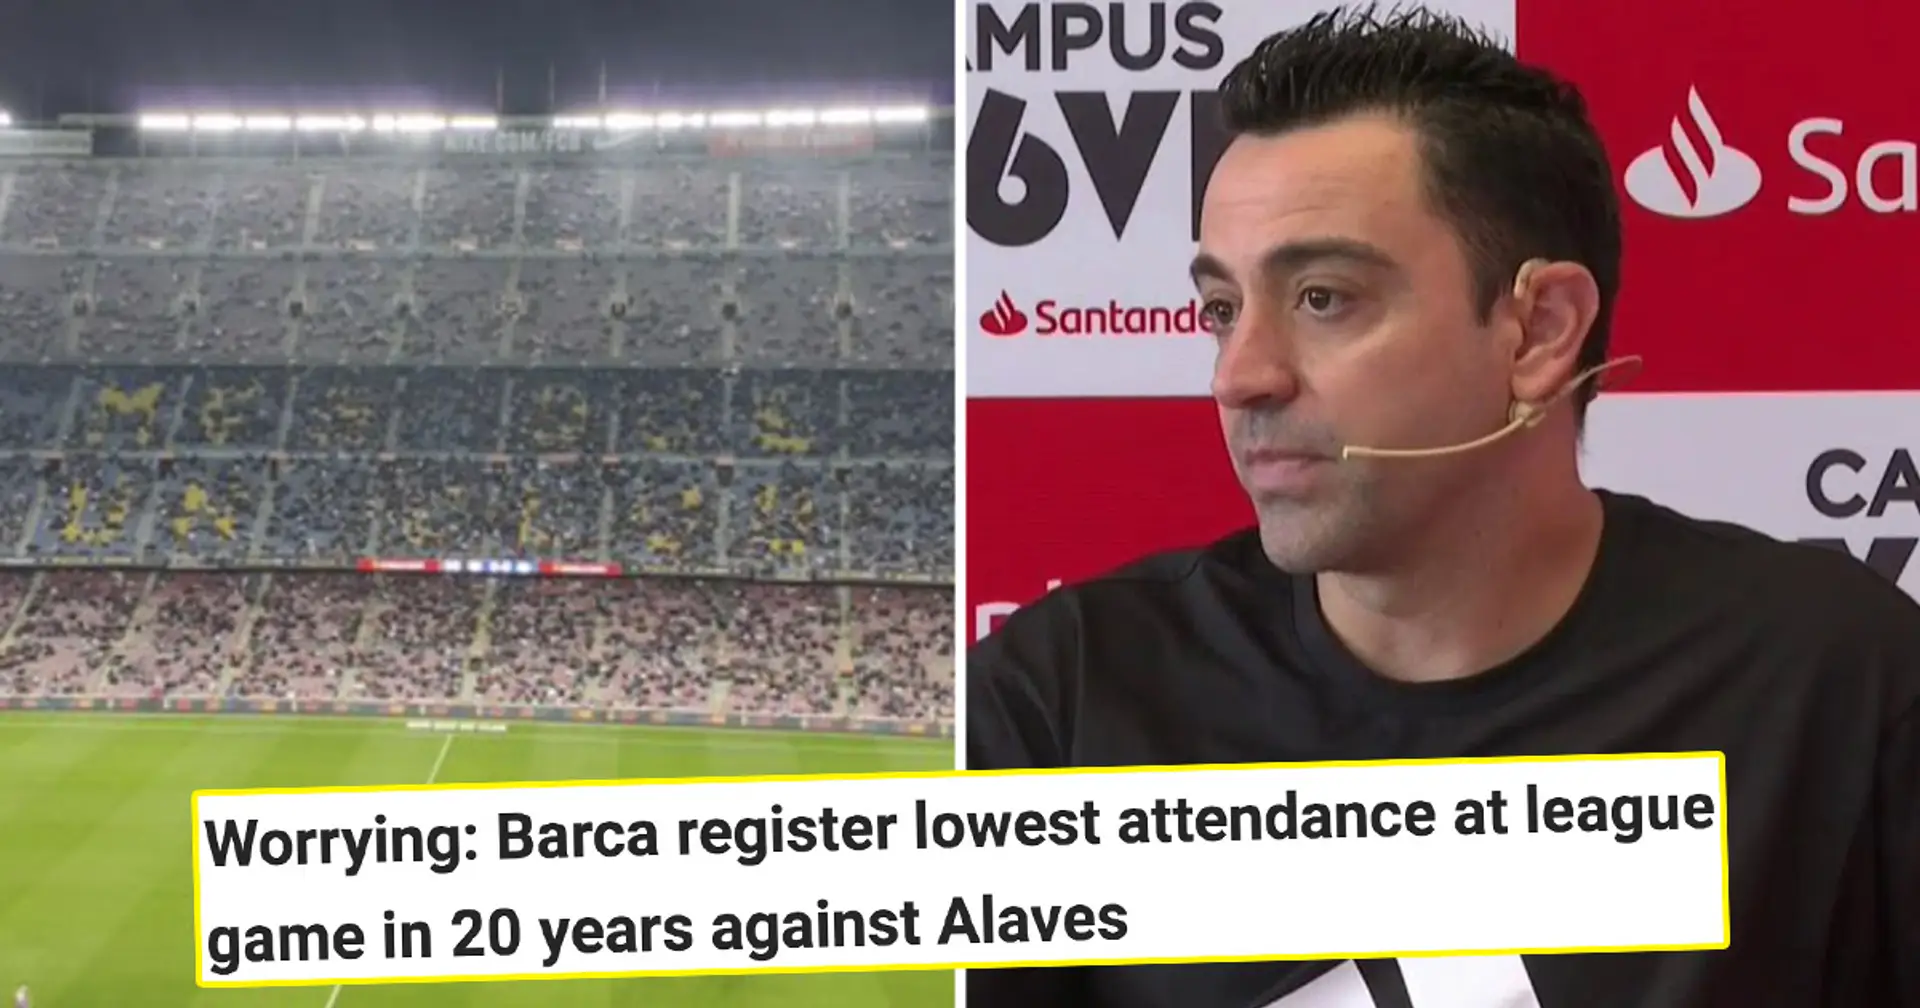 Seulement 1/3 du Camp Nou vient regarder le match d'Alaves – voici pourquoi Xavi pourrait être très mécontent d'une telle audience